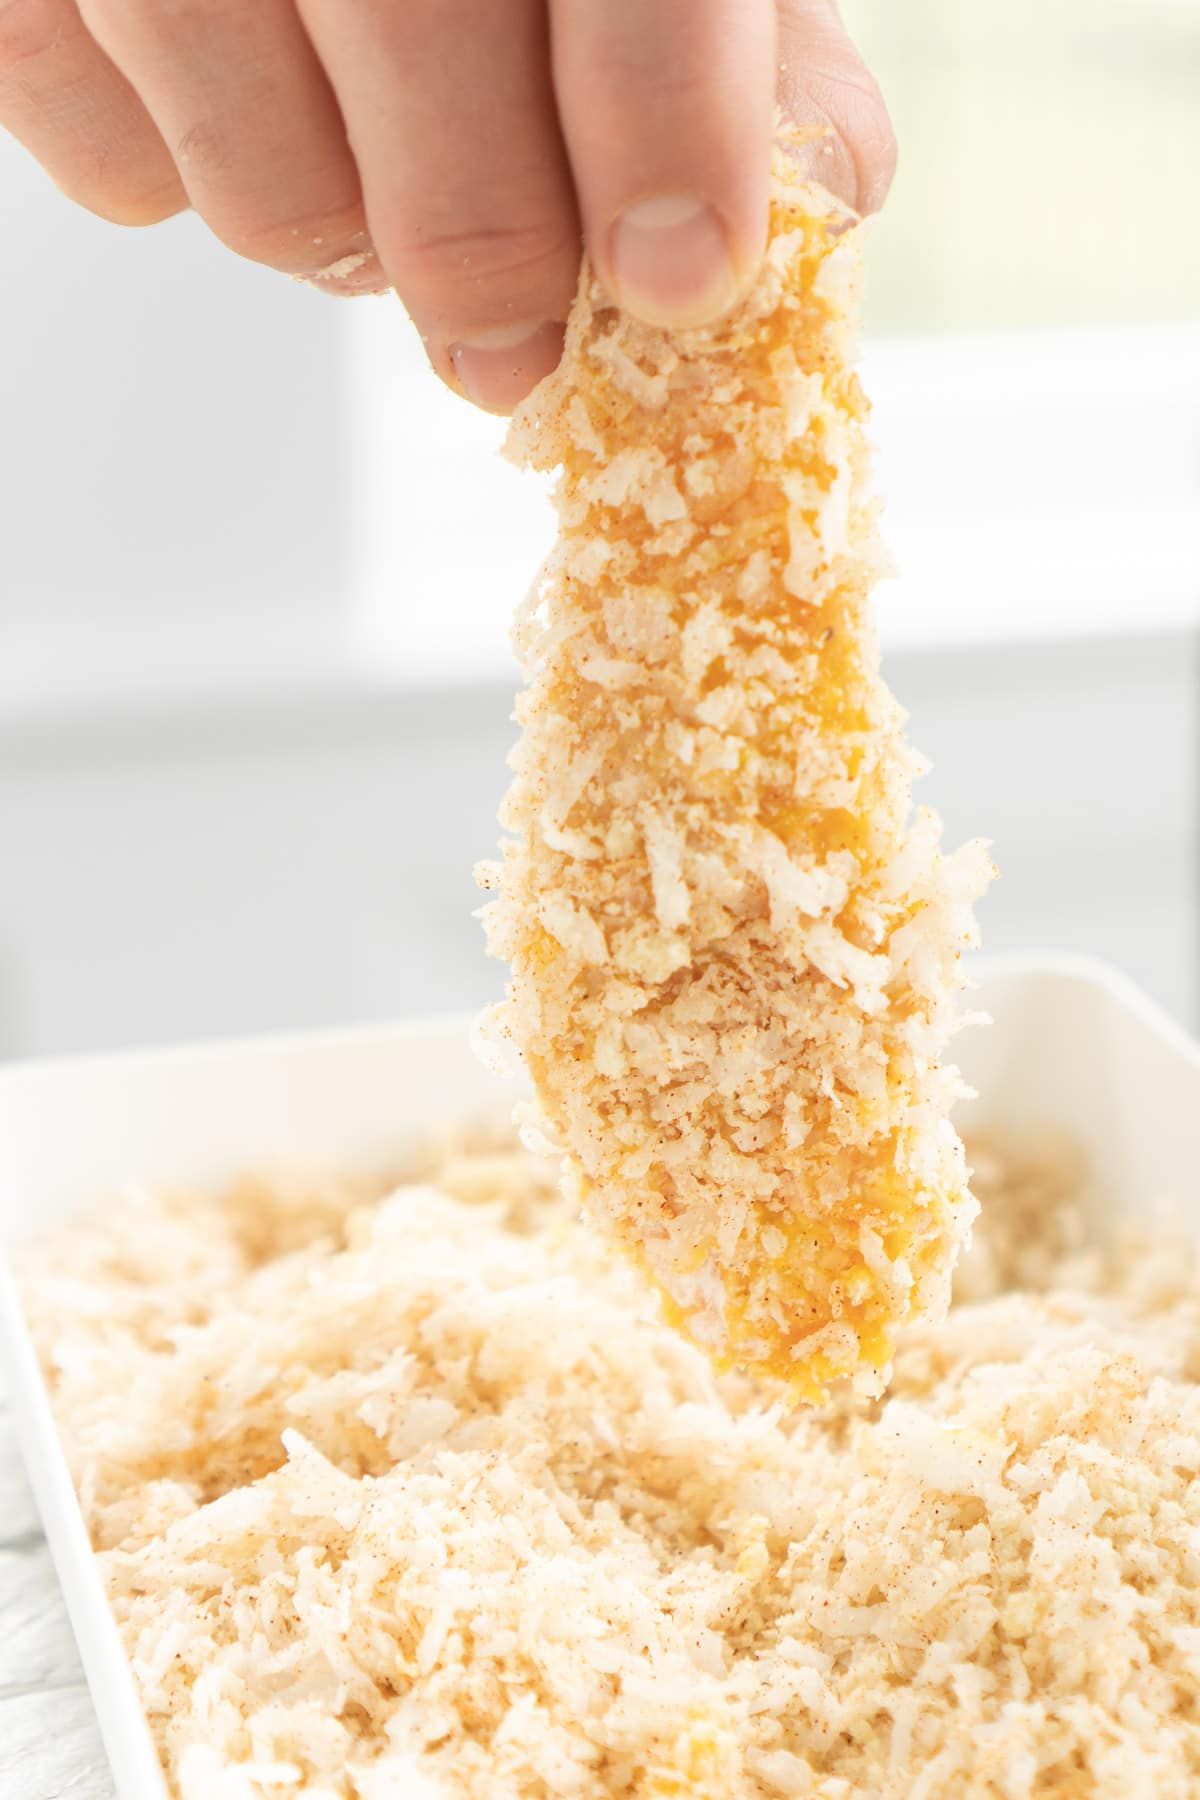 Χέρι που κρατά ψηλά ένα παναρισμένο πατατό κοτόπουλο καρύδας πάνω από το ψωμί κοτόπουλου καρύδας